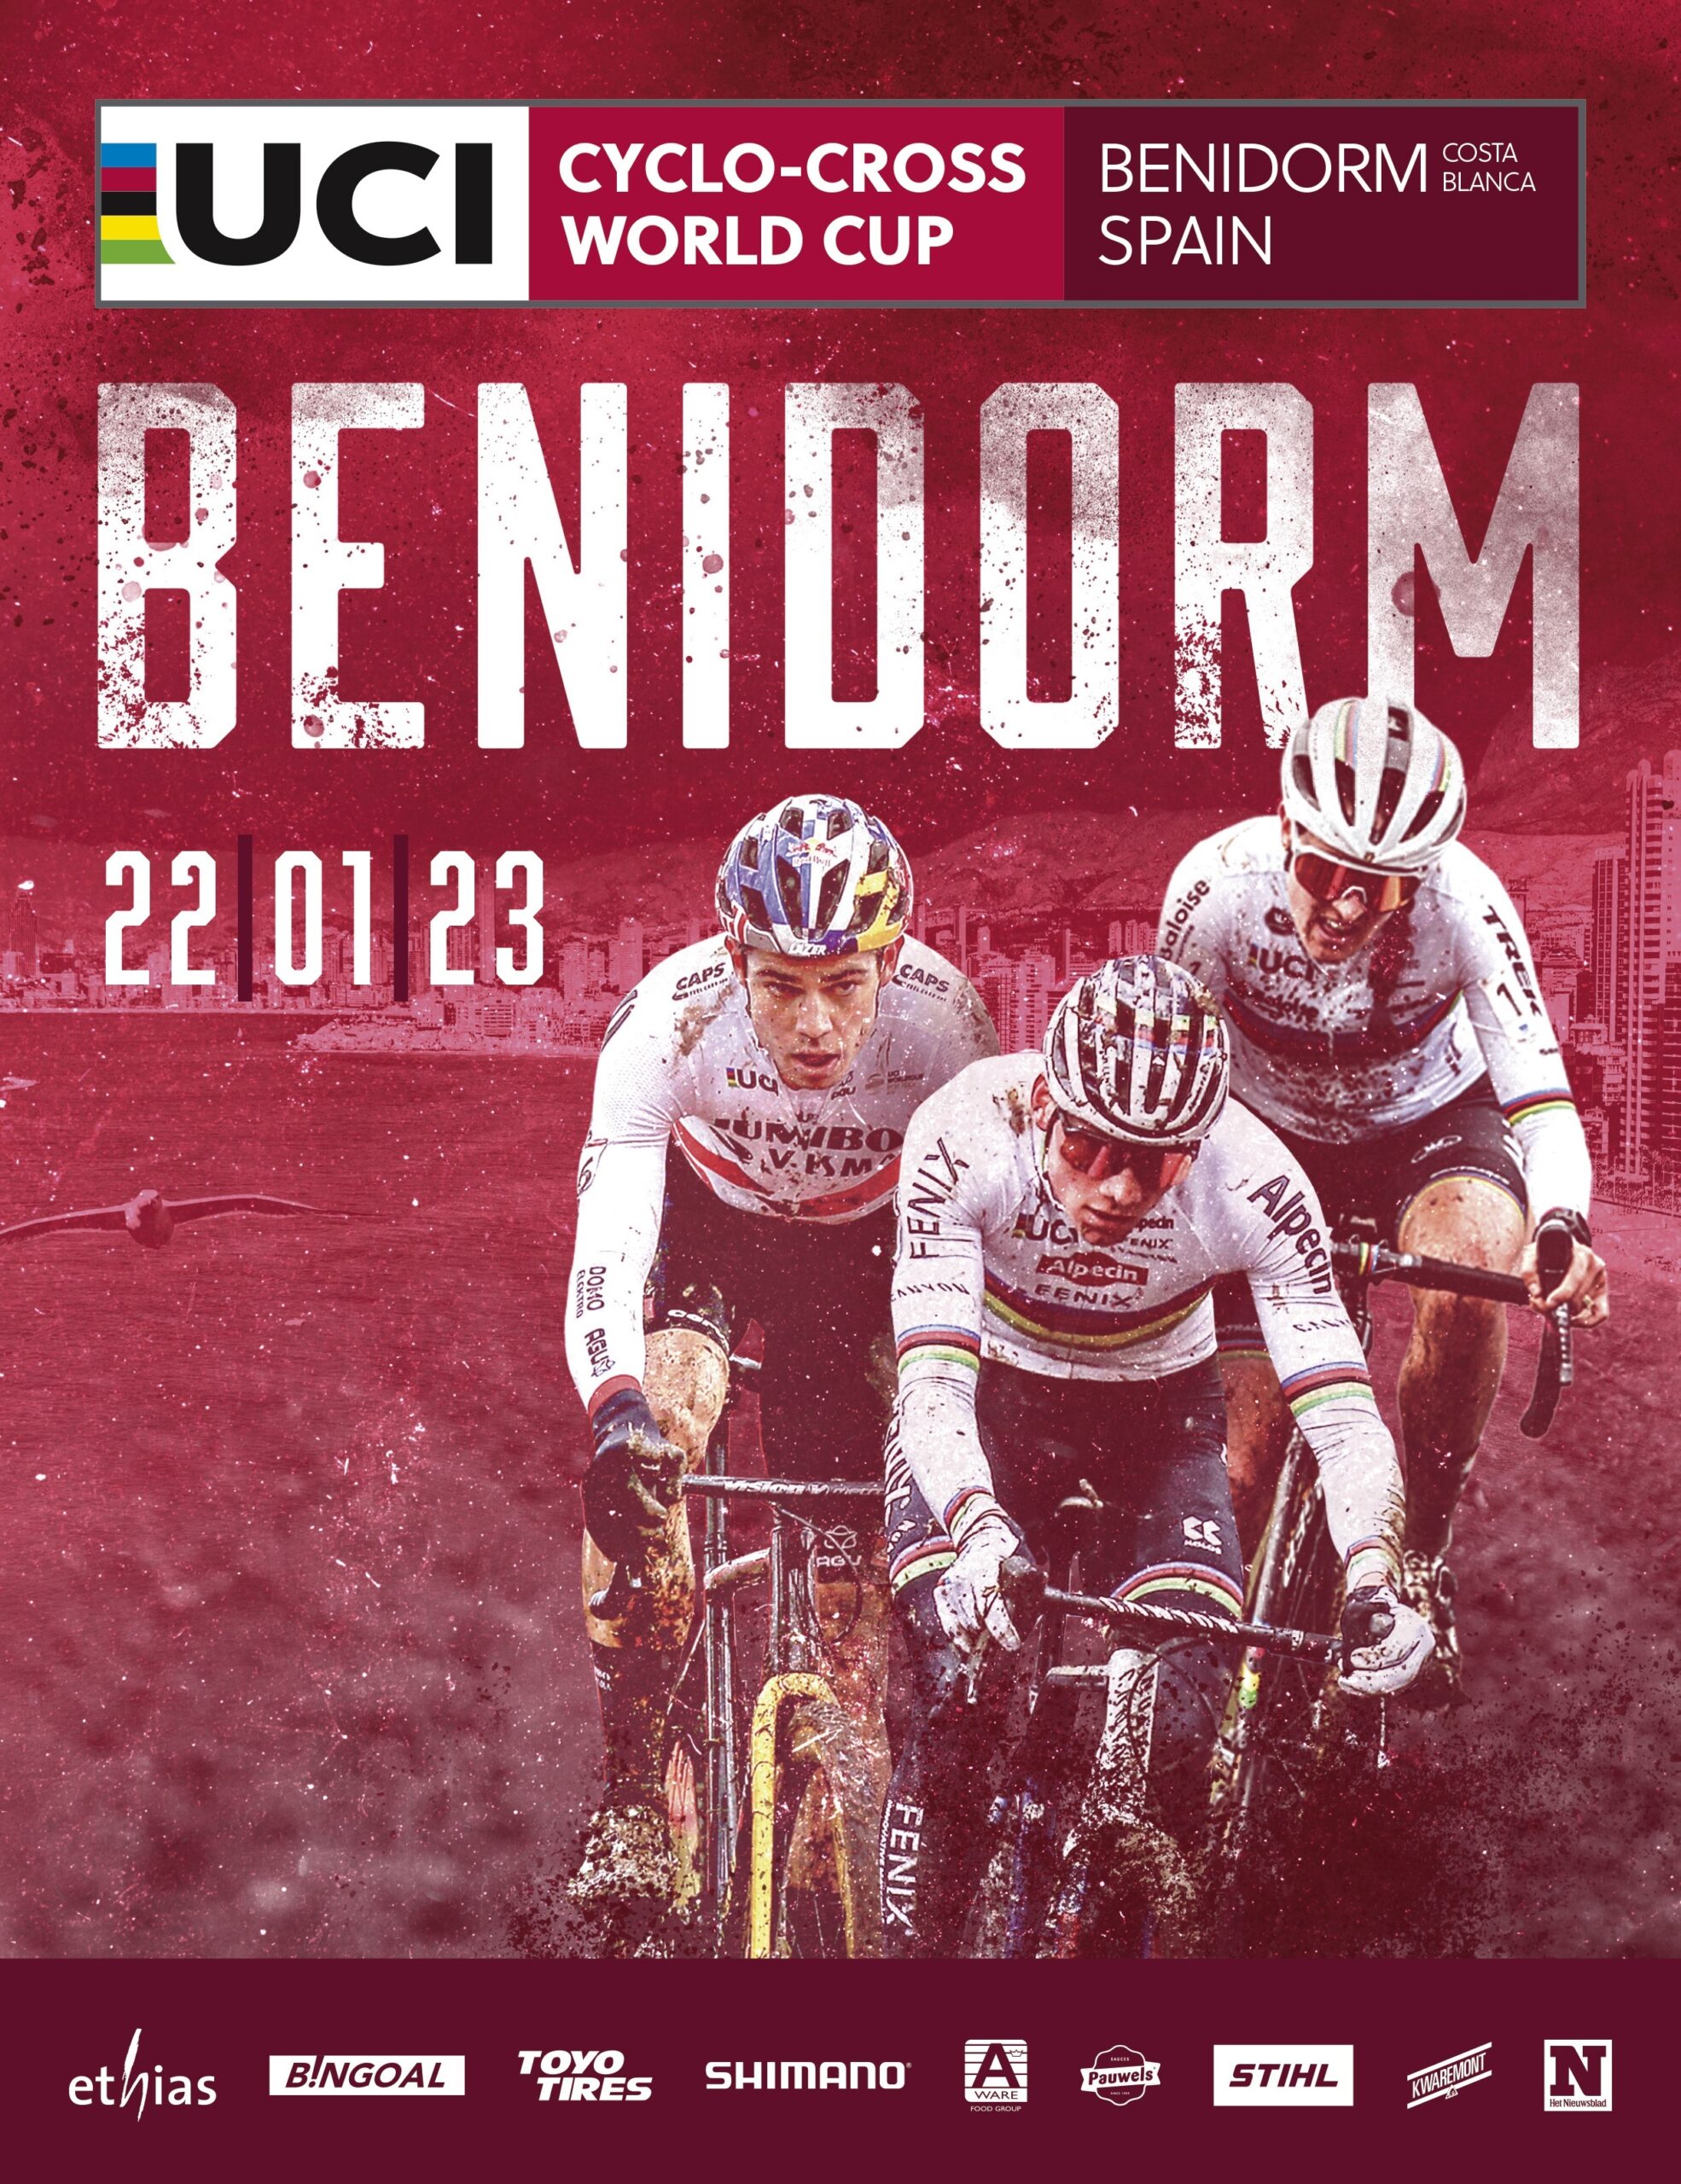 Benidorm tendrá prueba en la Copa del Mundo de Ciclocross